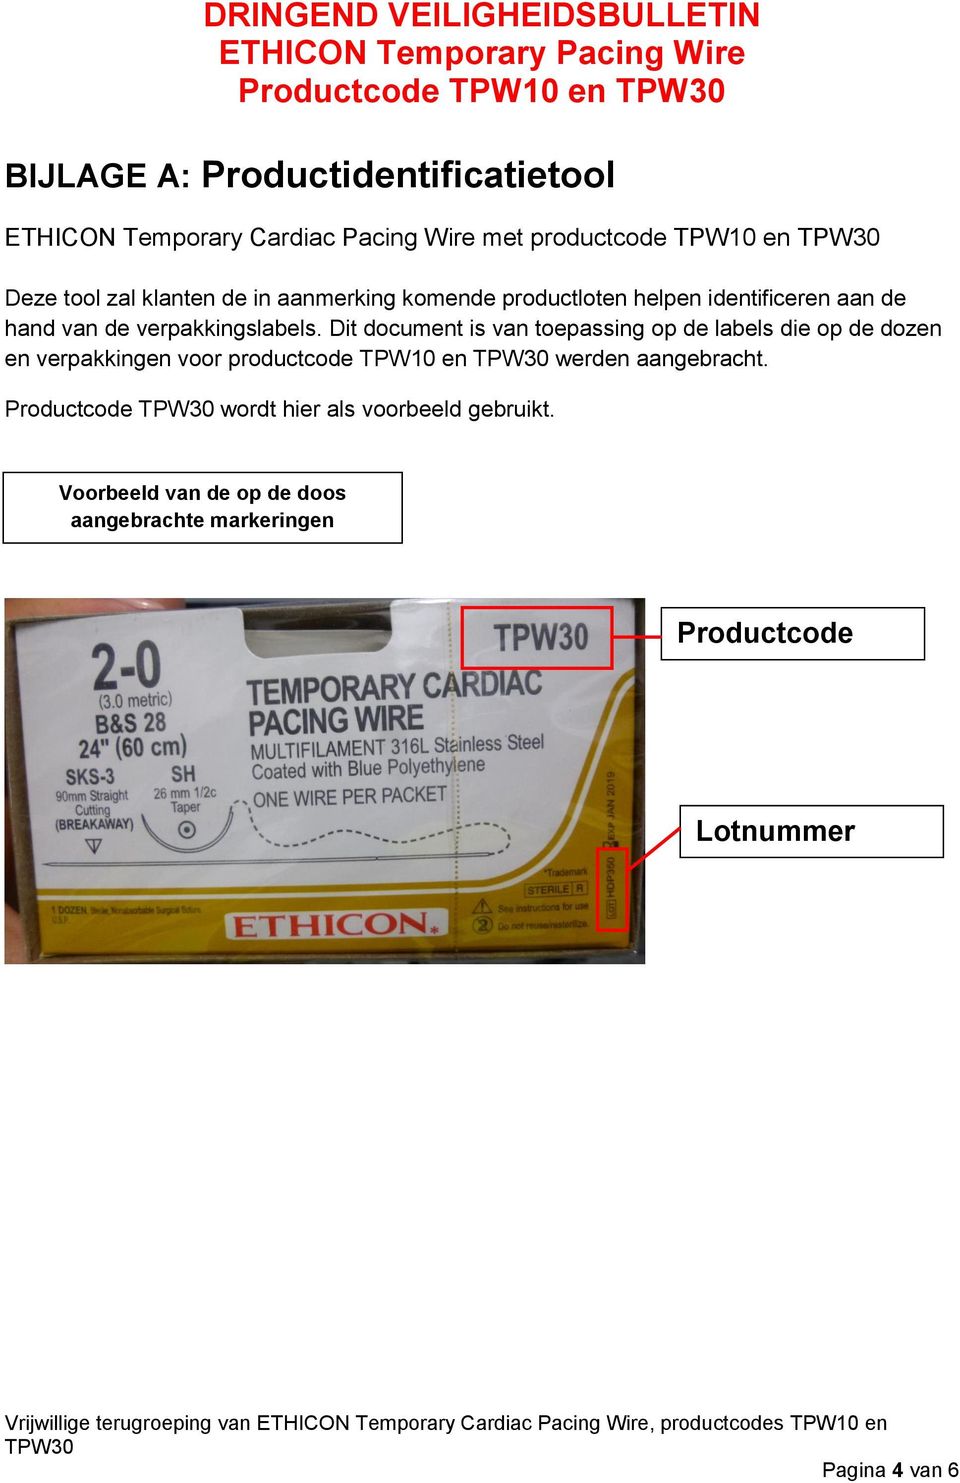 Dit document is van toepassing op de labels die op de dozen en verpakkingen voor productcode TPW10 en werden aangebracht.